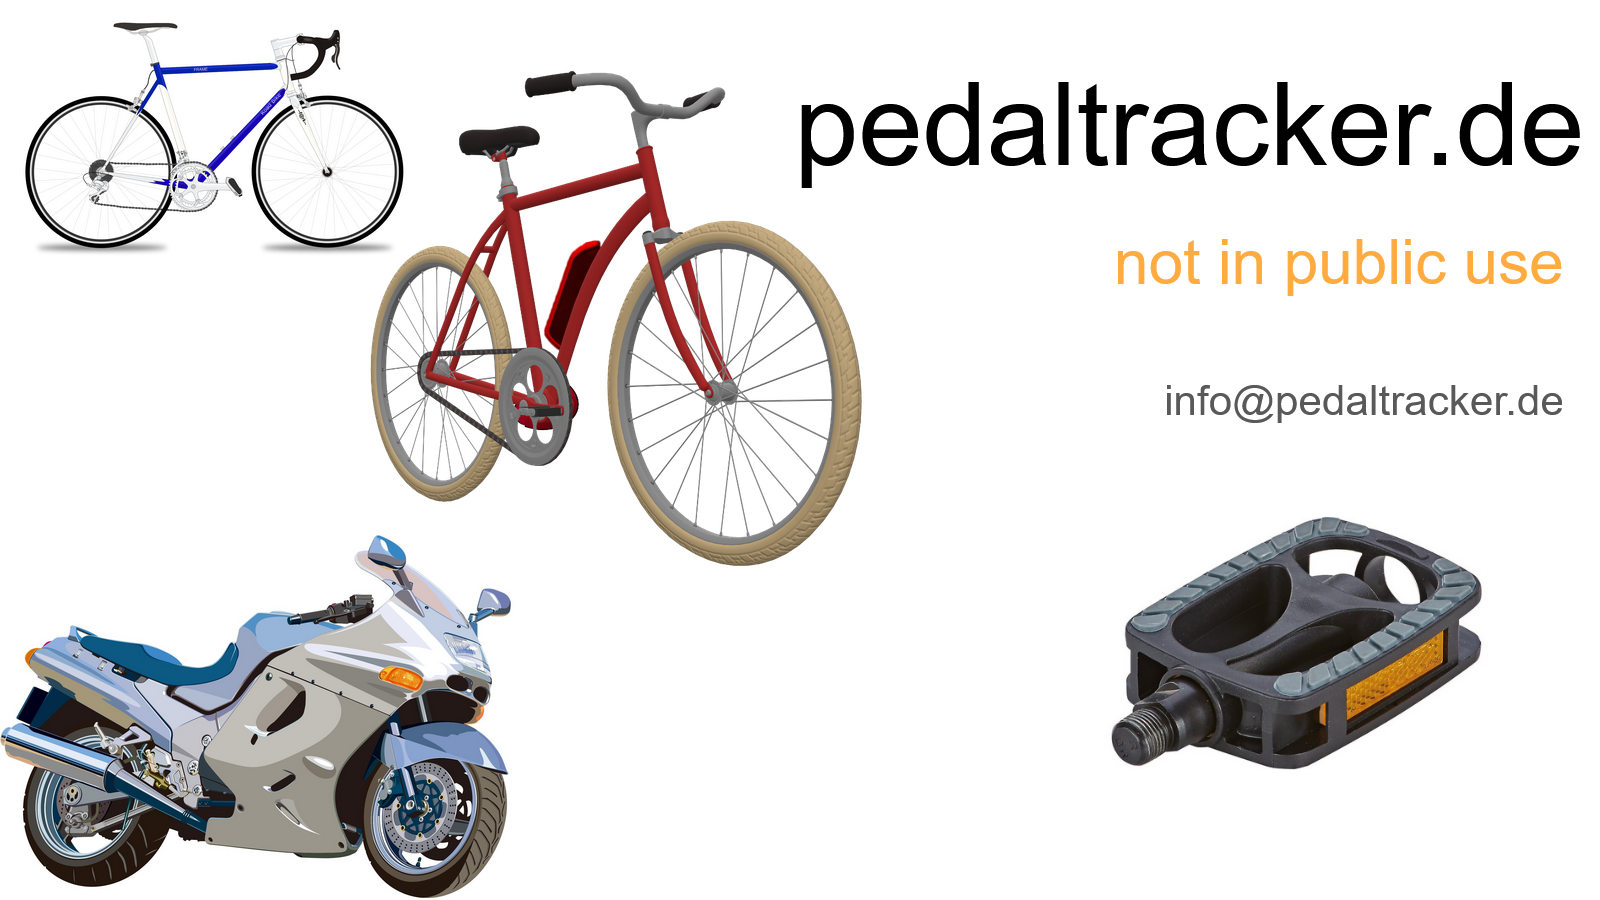 www.pedaltracker.de